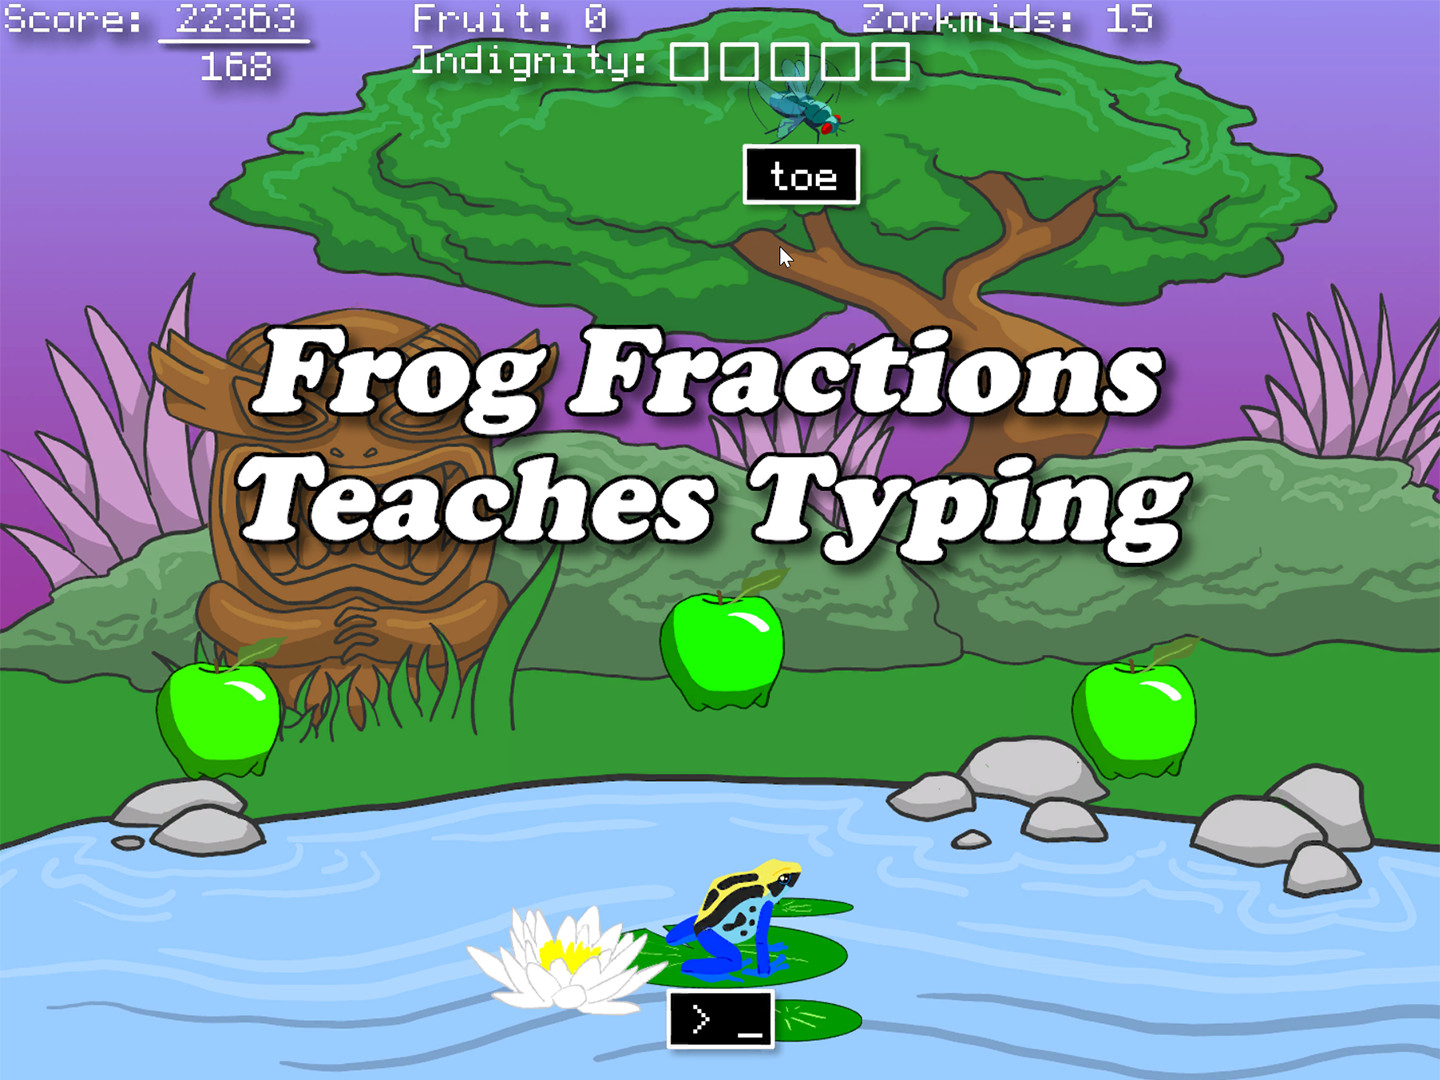 玩家福利来了 经典游戏《青蛙分数》免费上架Steam